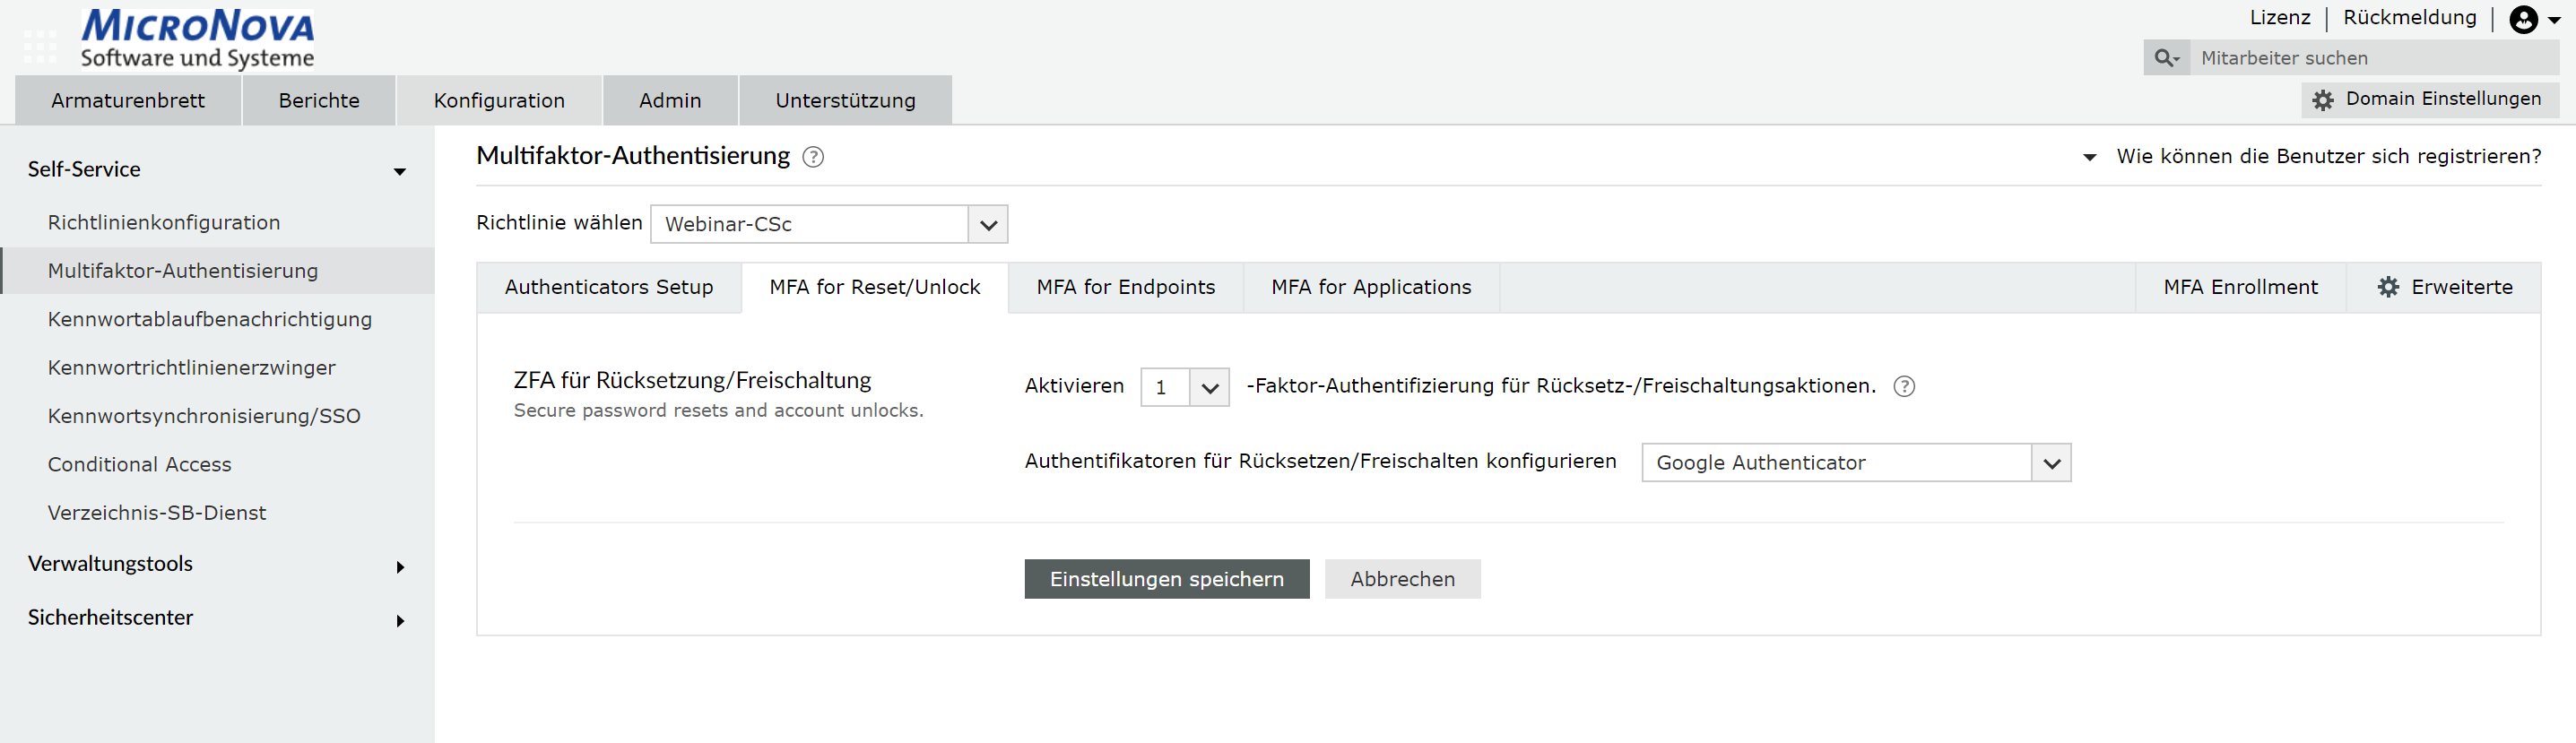 Screenshot ADSelfService Plus: MFA-Einstellungen für Endpoint-Anmeldungen